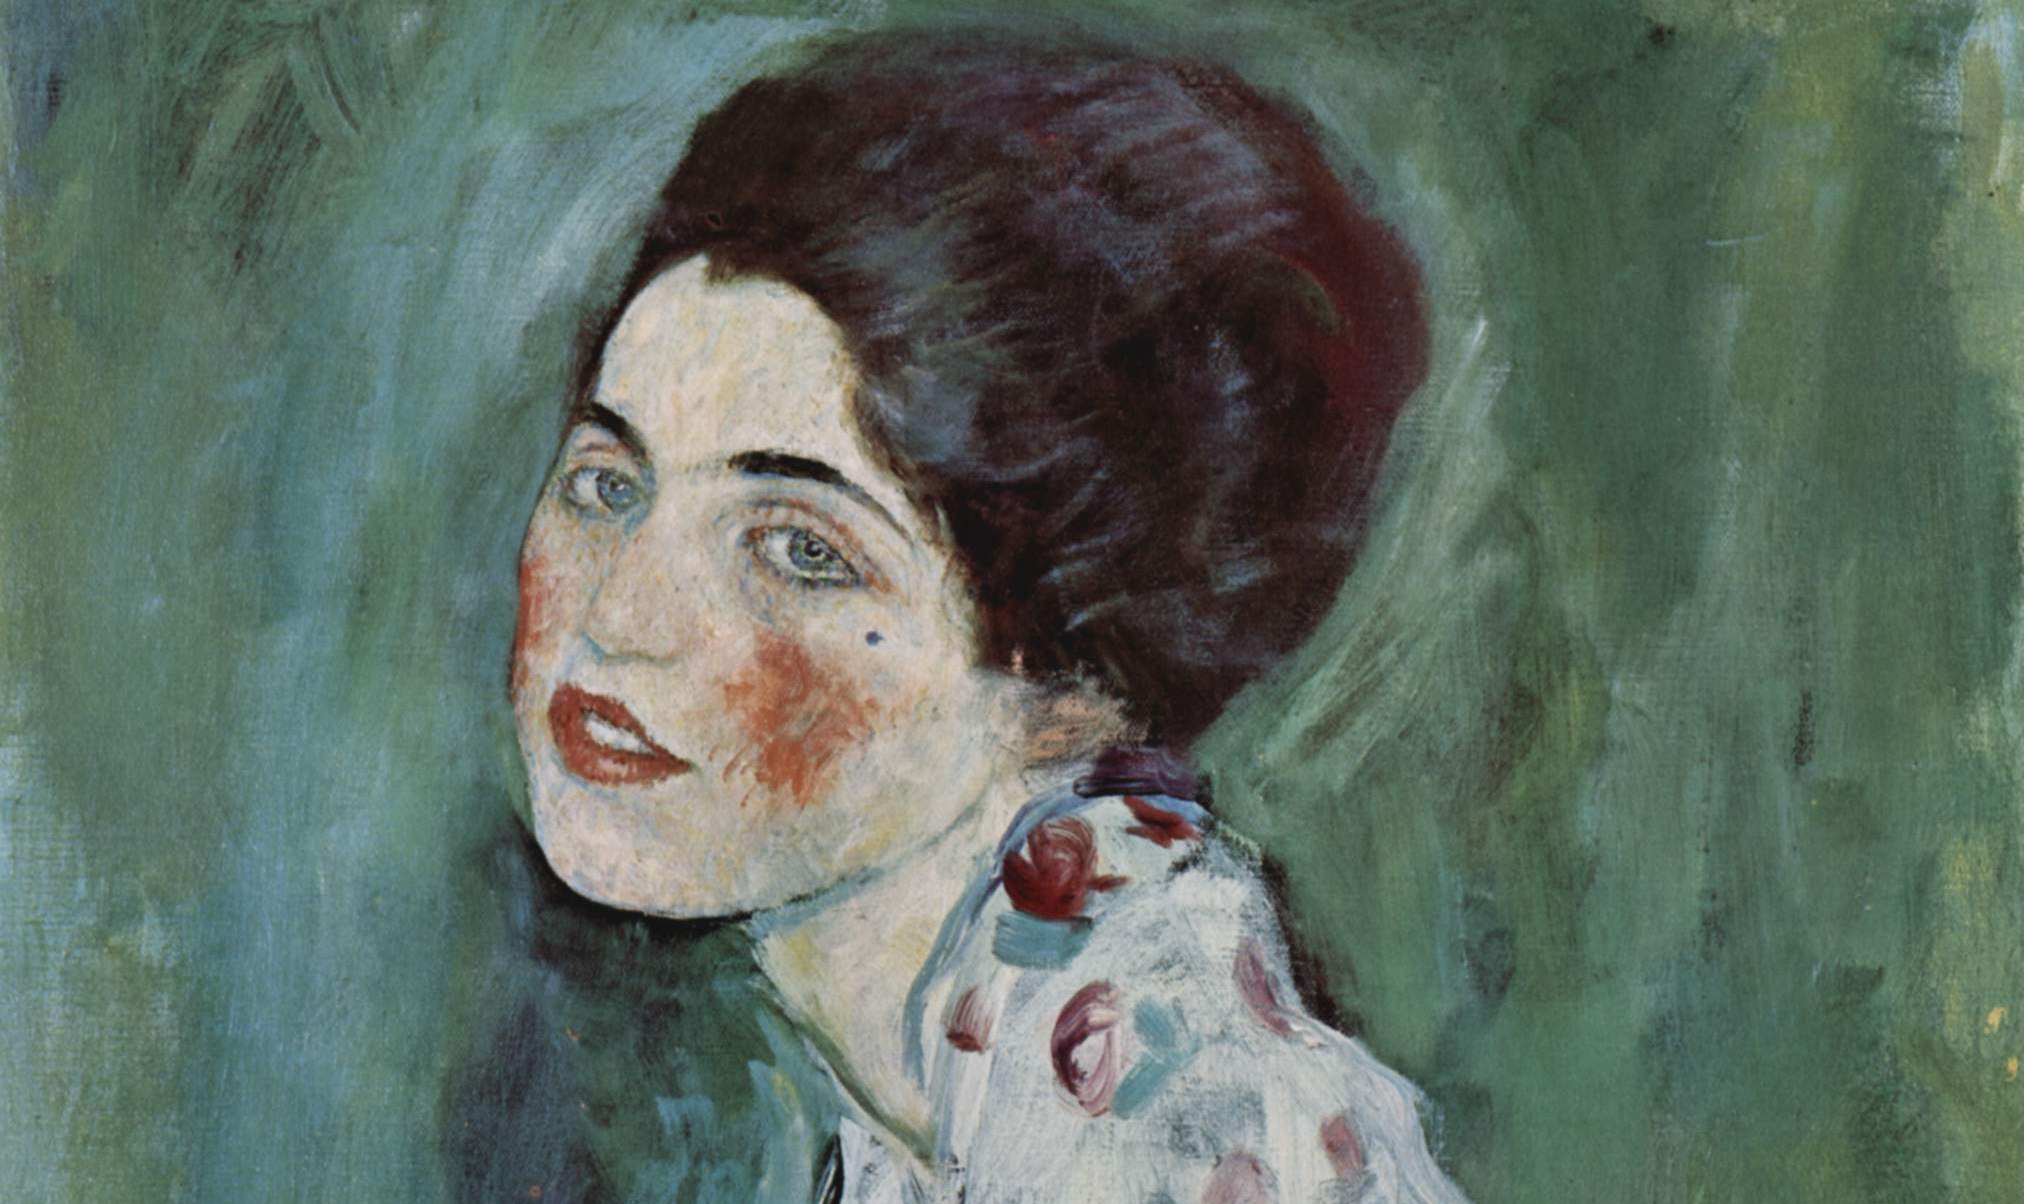 Obra, pintada pelo austríaco Gustav Klimt em 1917, passará por testes para verificar a autenticidade da obra; dono de galeria diz ter certeza de que se trata da pintura original